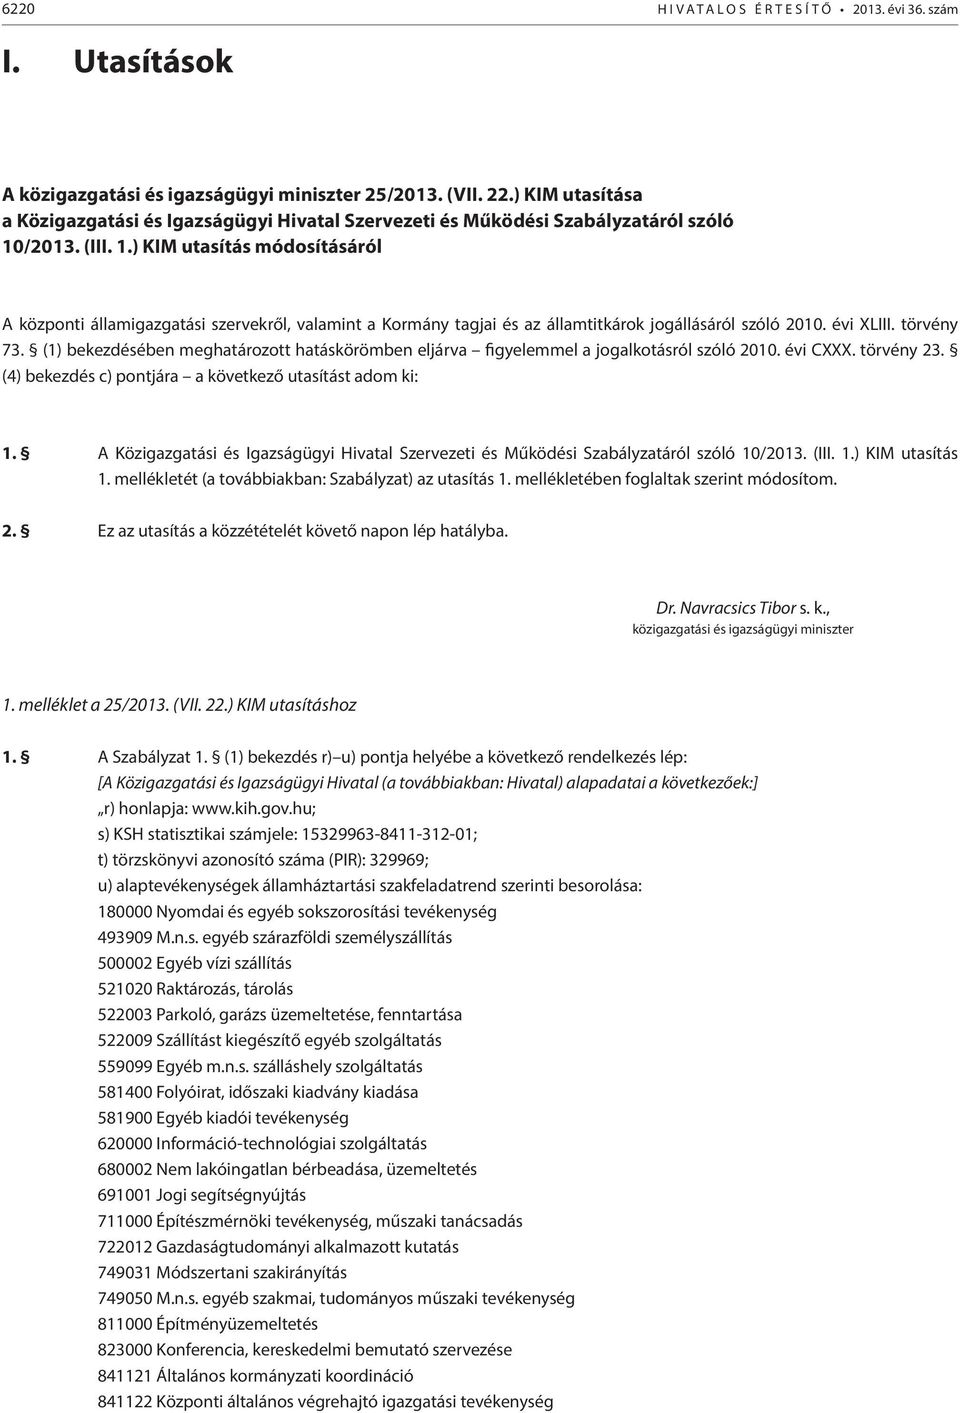 /2013. (III. 1.) KIM utasítás módosításáról A központi államigazgatási szervekről, valamint a Kormány tagjai és az államtitkárok jogállásáról szóló 2010. évi XLIII. törvény 73.